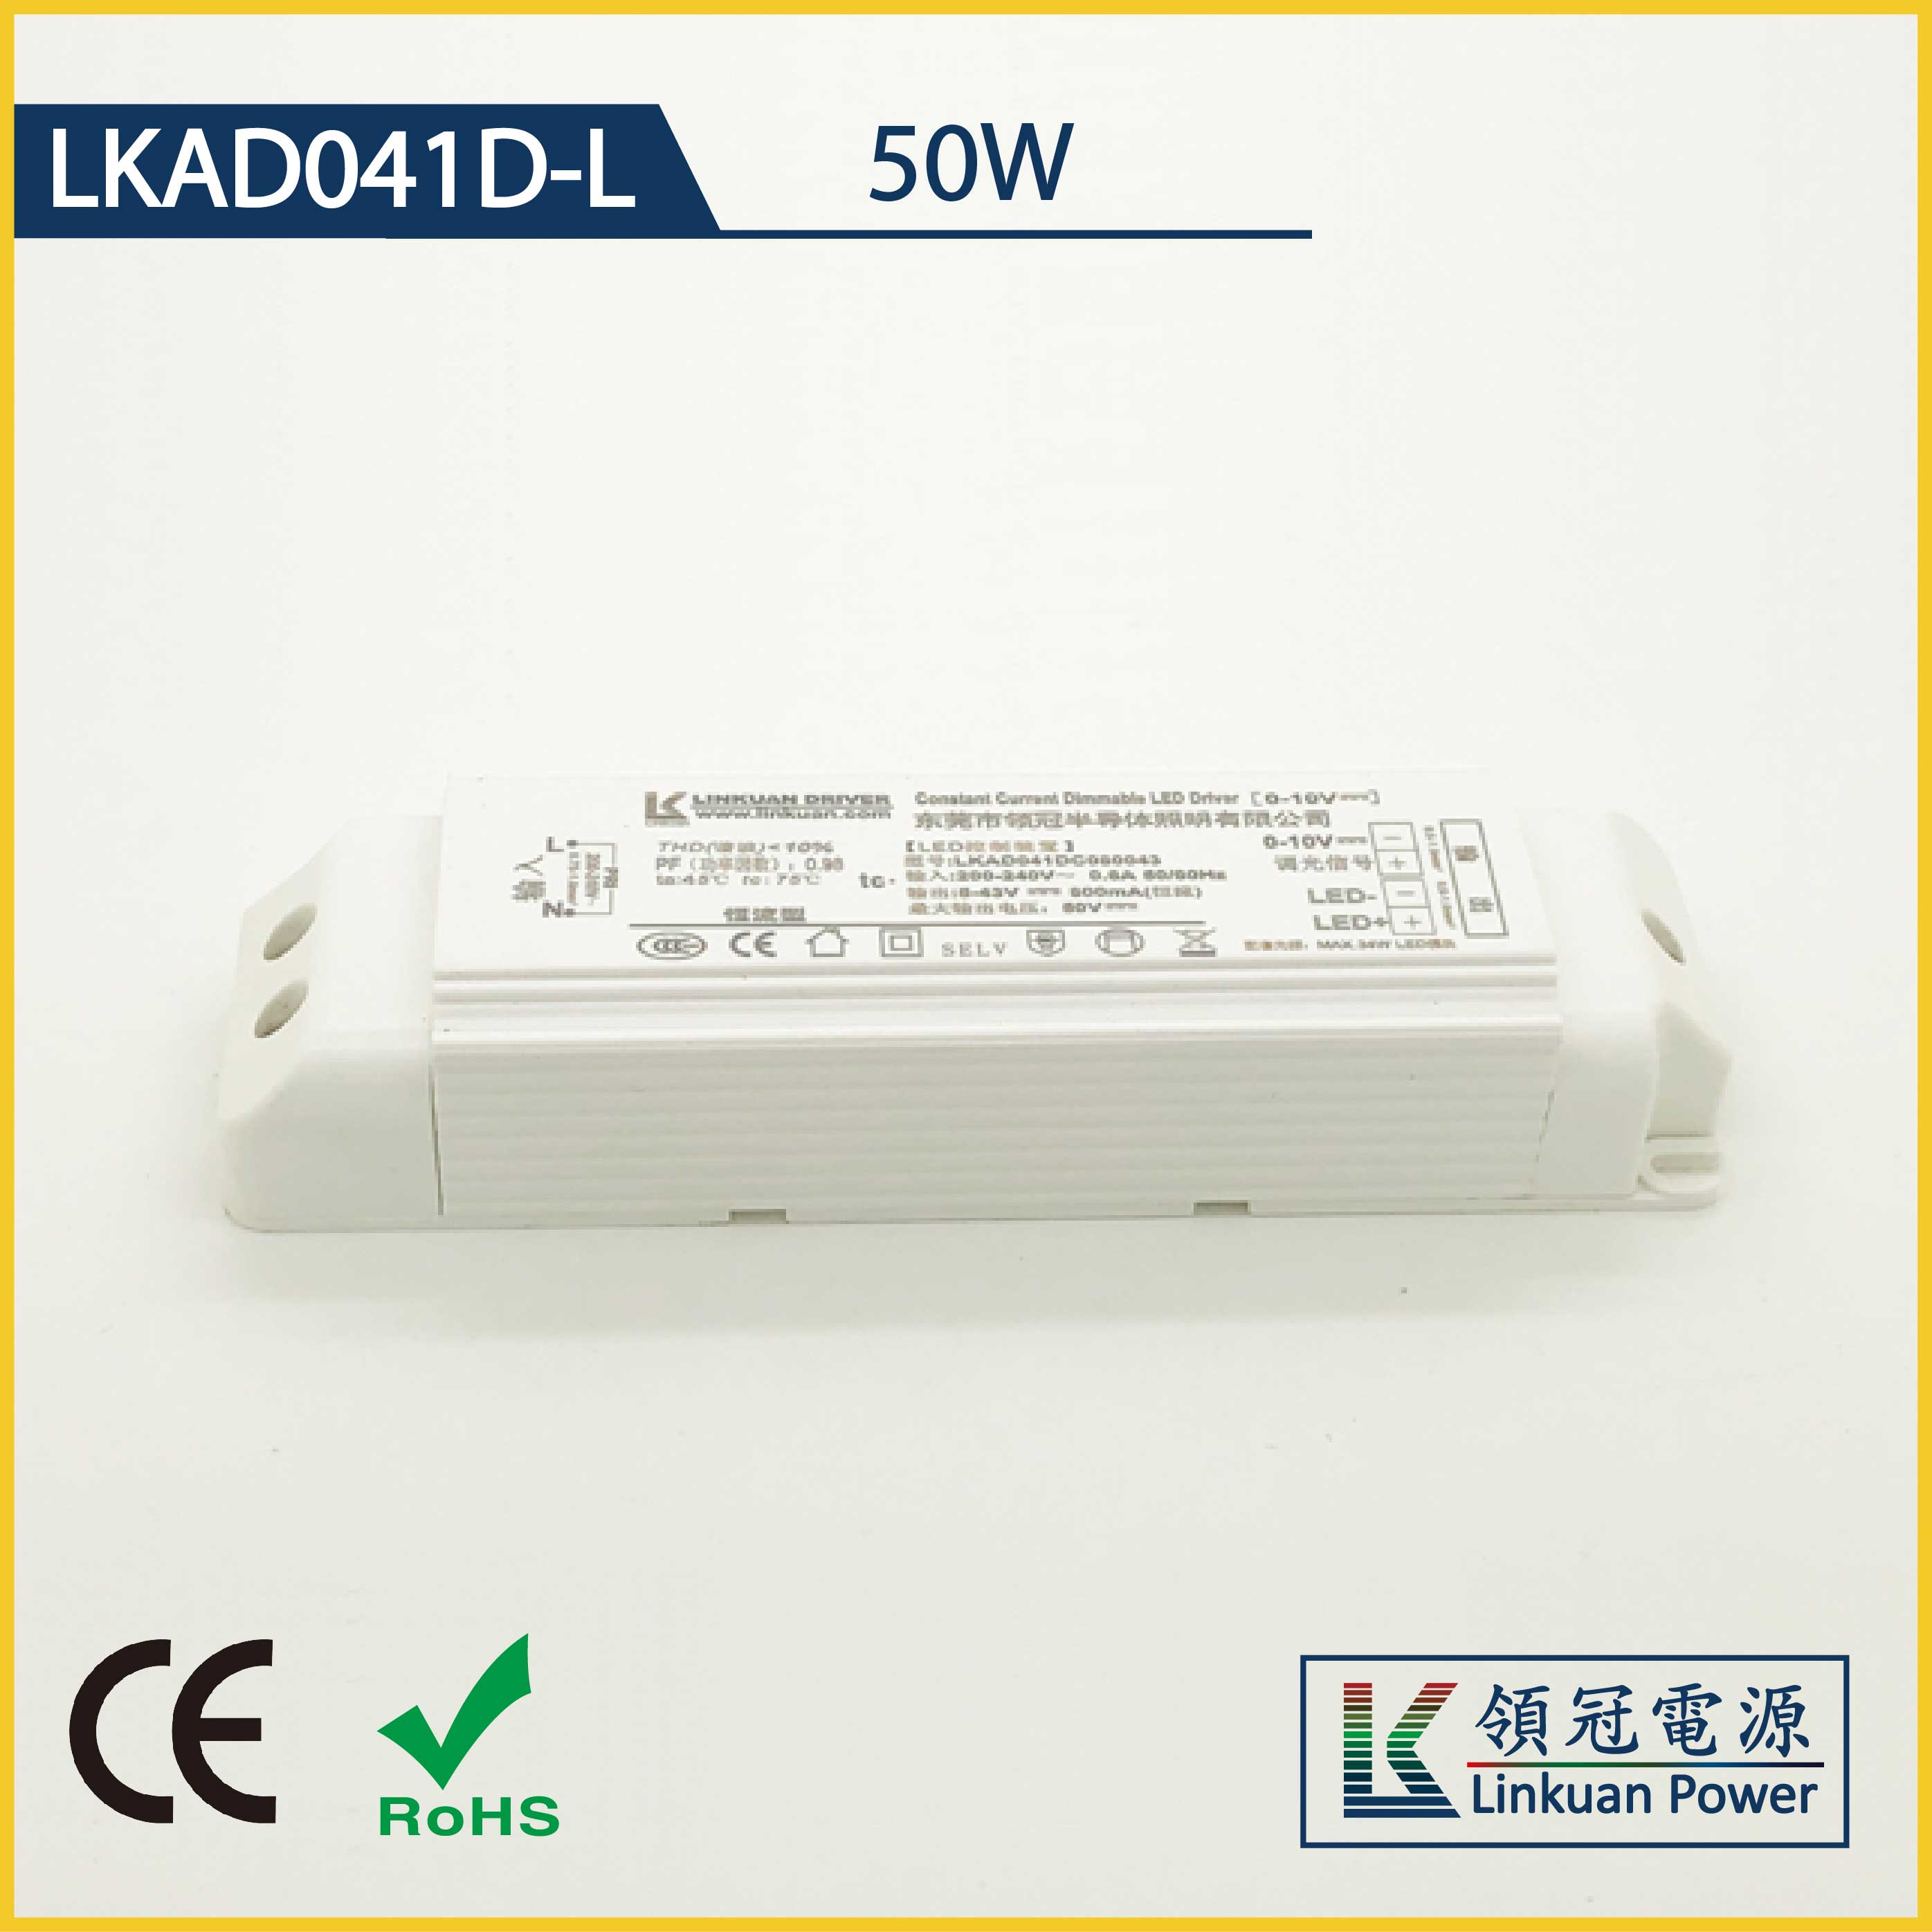 LKAD041D-L 50W 5-42V 1200mA 0-10V CCT Adjusting LED drivers